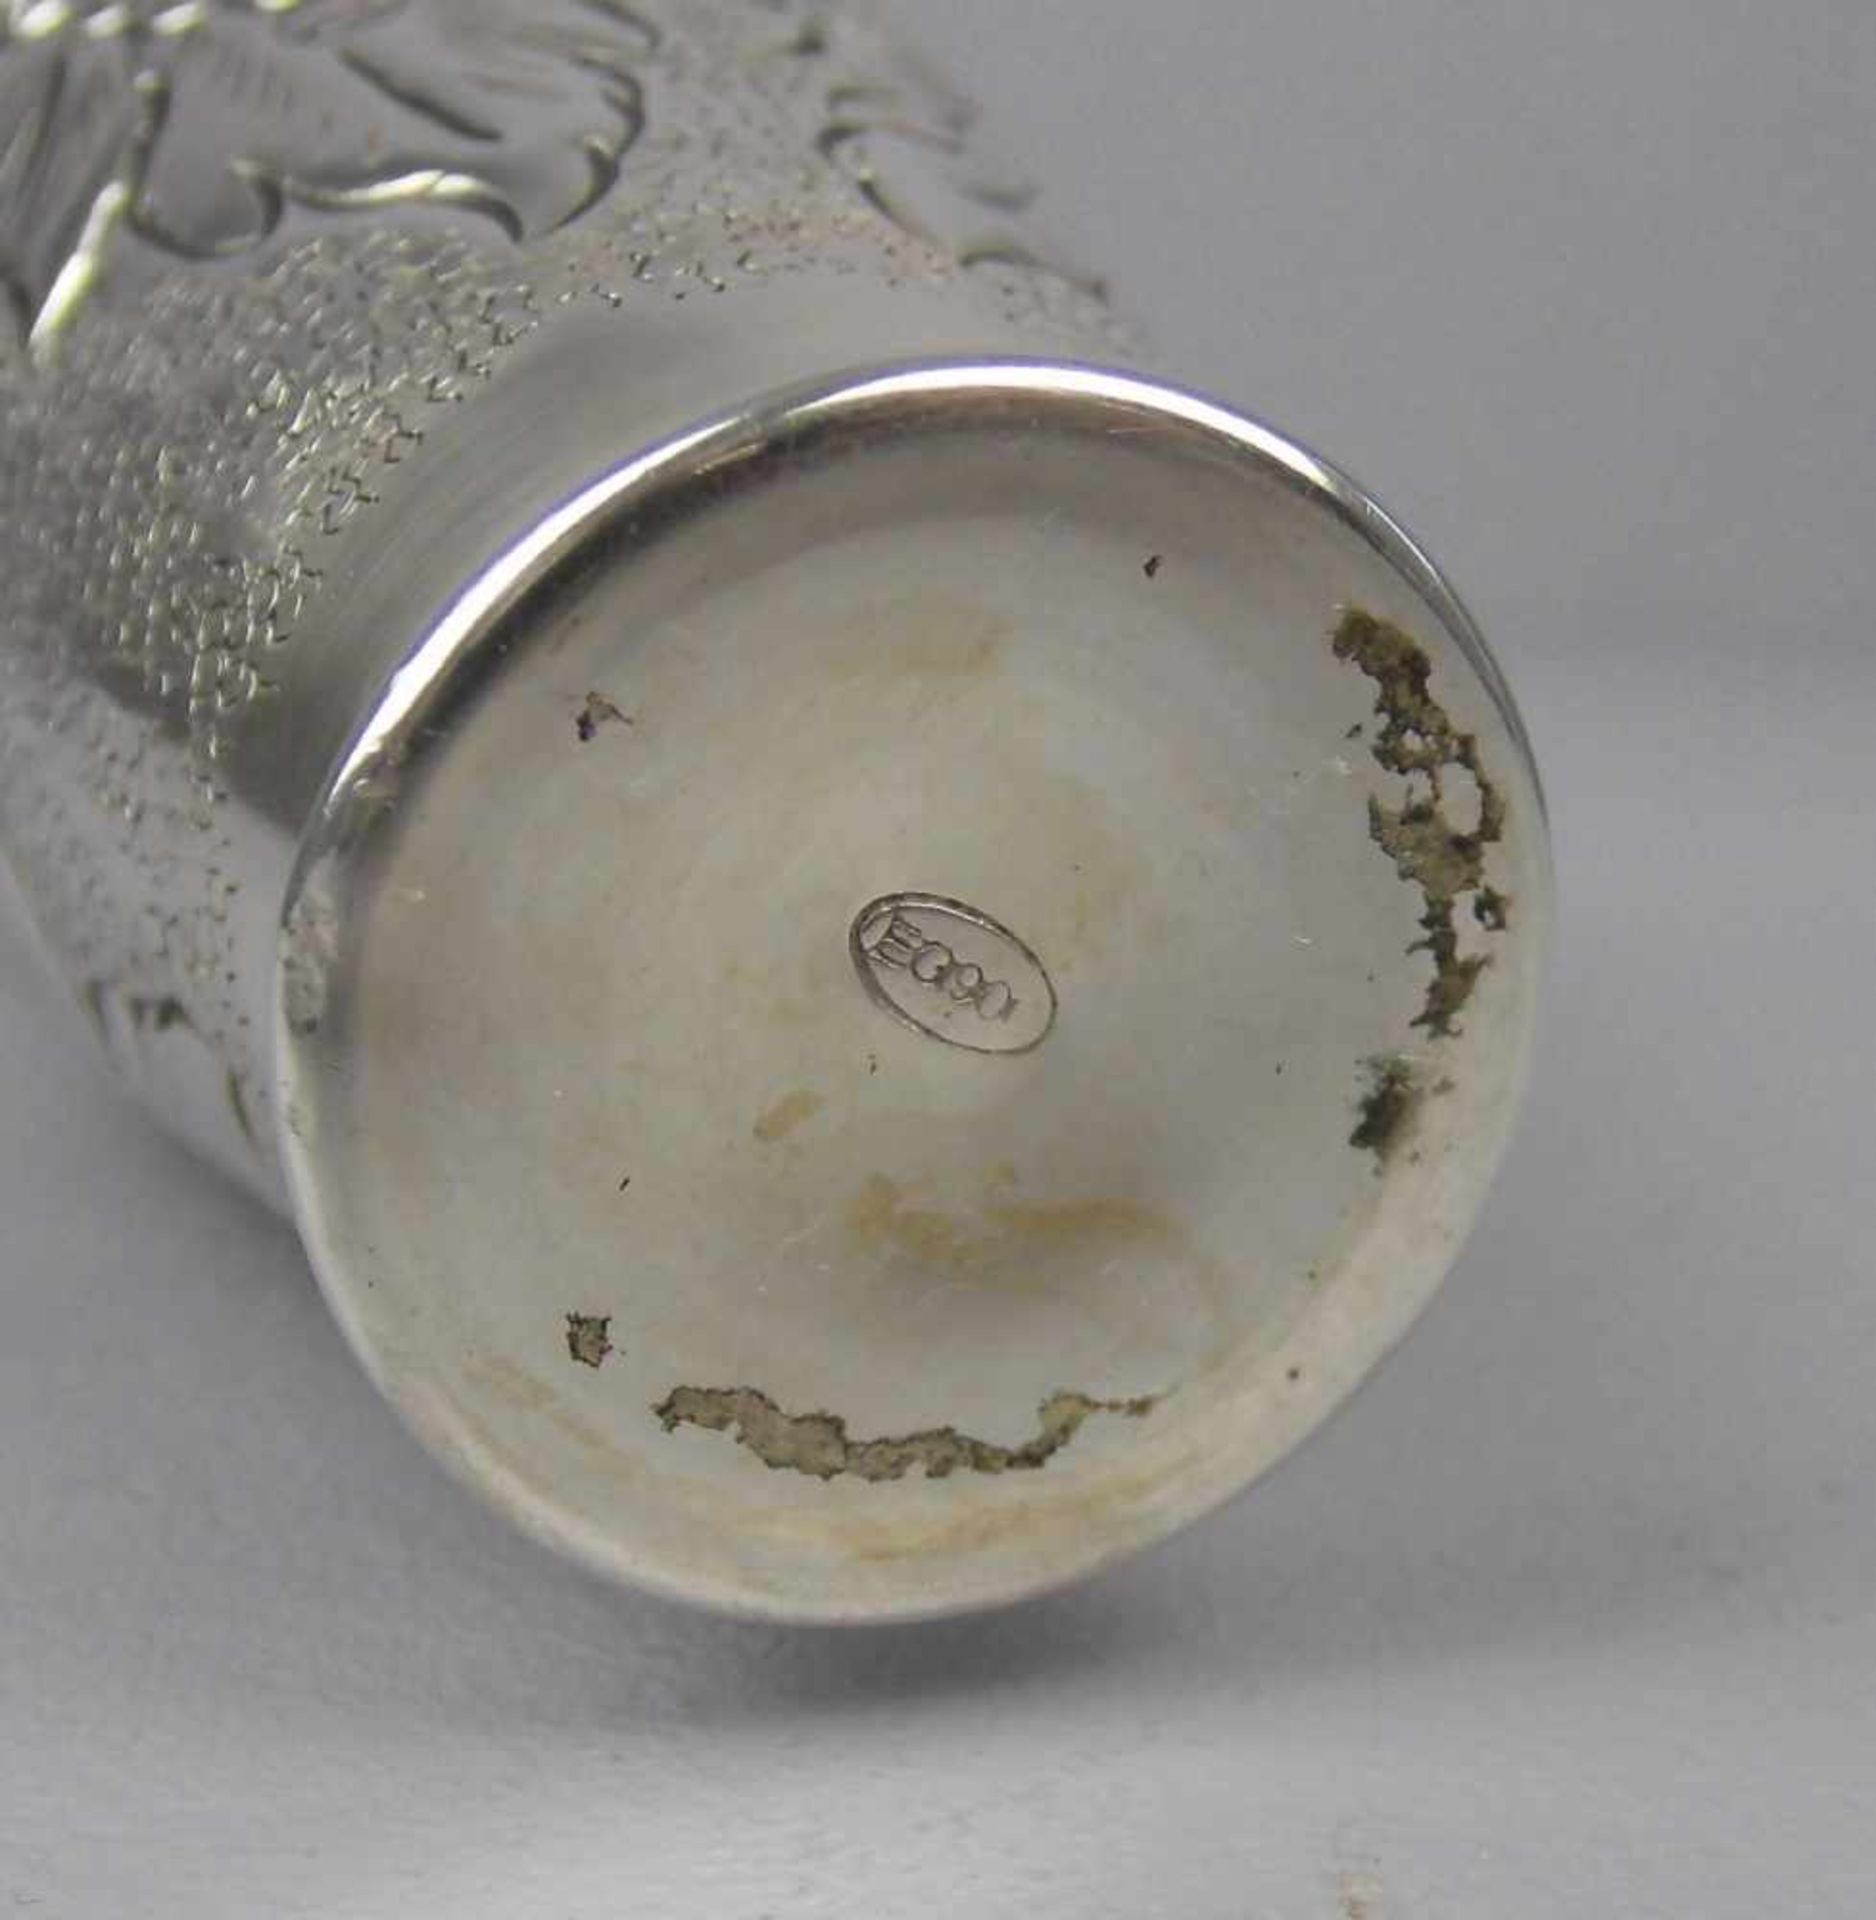 VASE, 900er Silber (116 g), unter dem Stand gepunzt mit Feingehaltsangabe und Hersteller- bzw. - Image 5 of 5